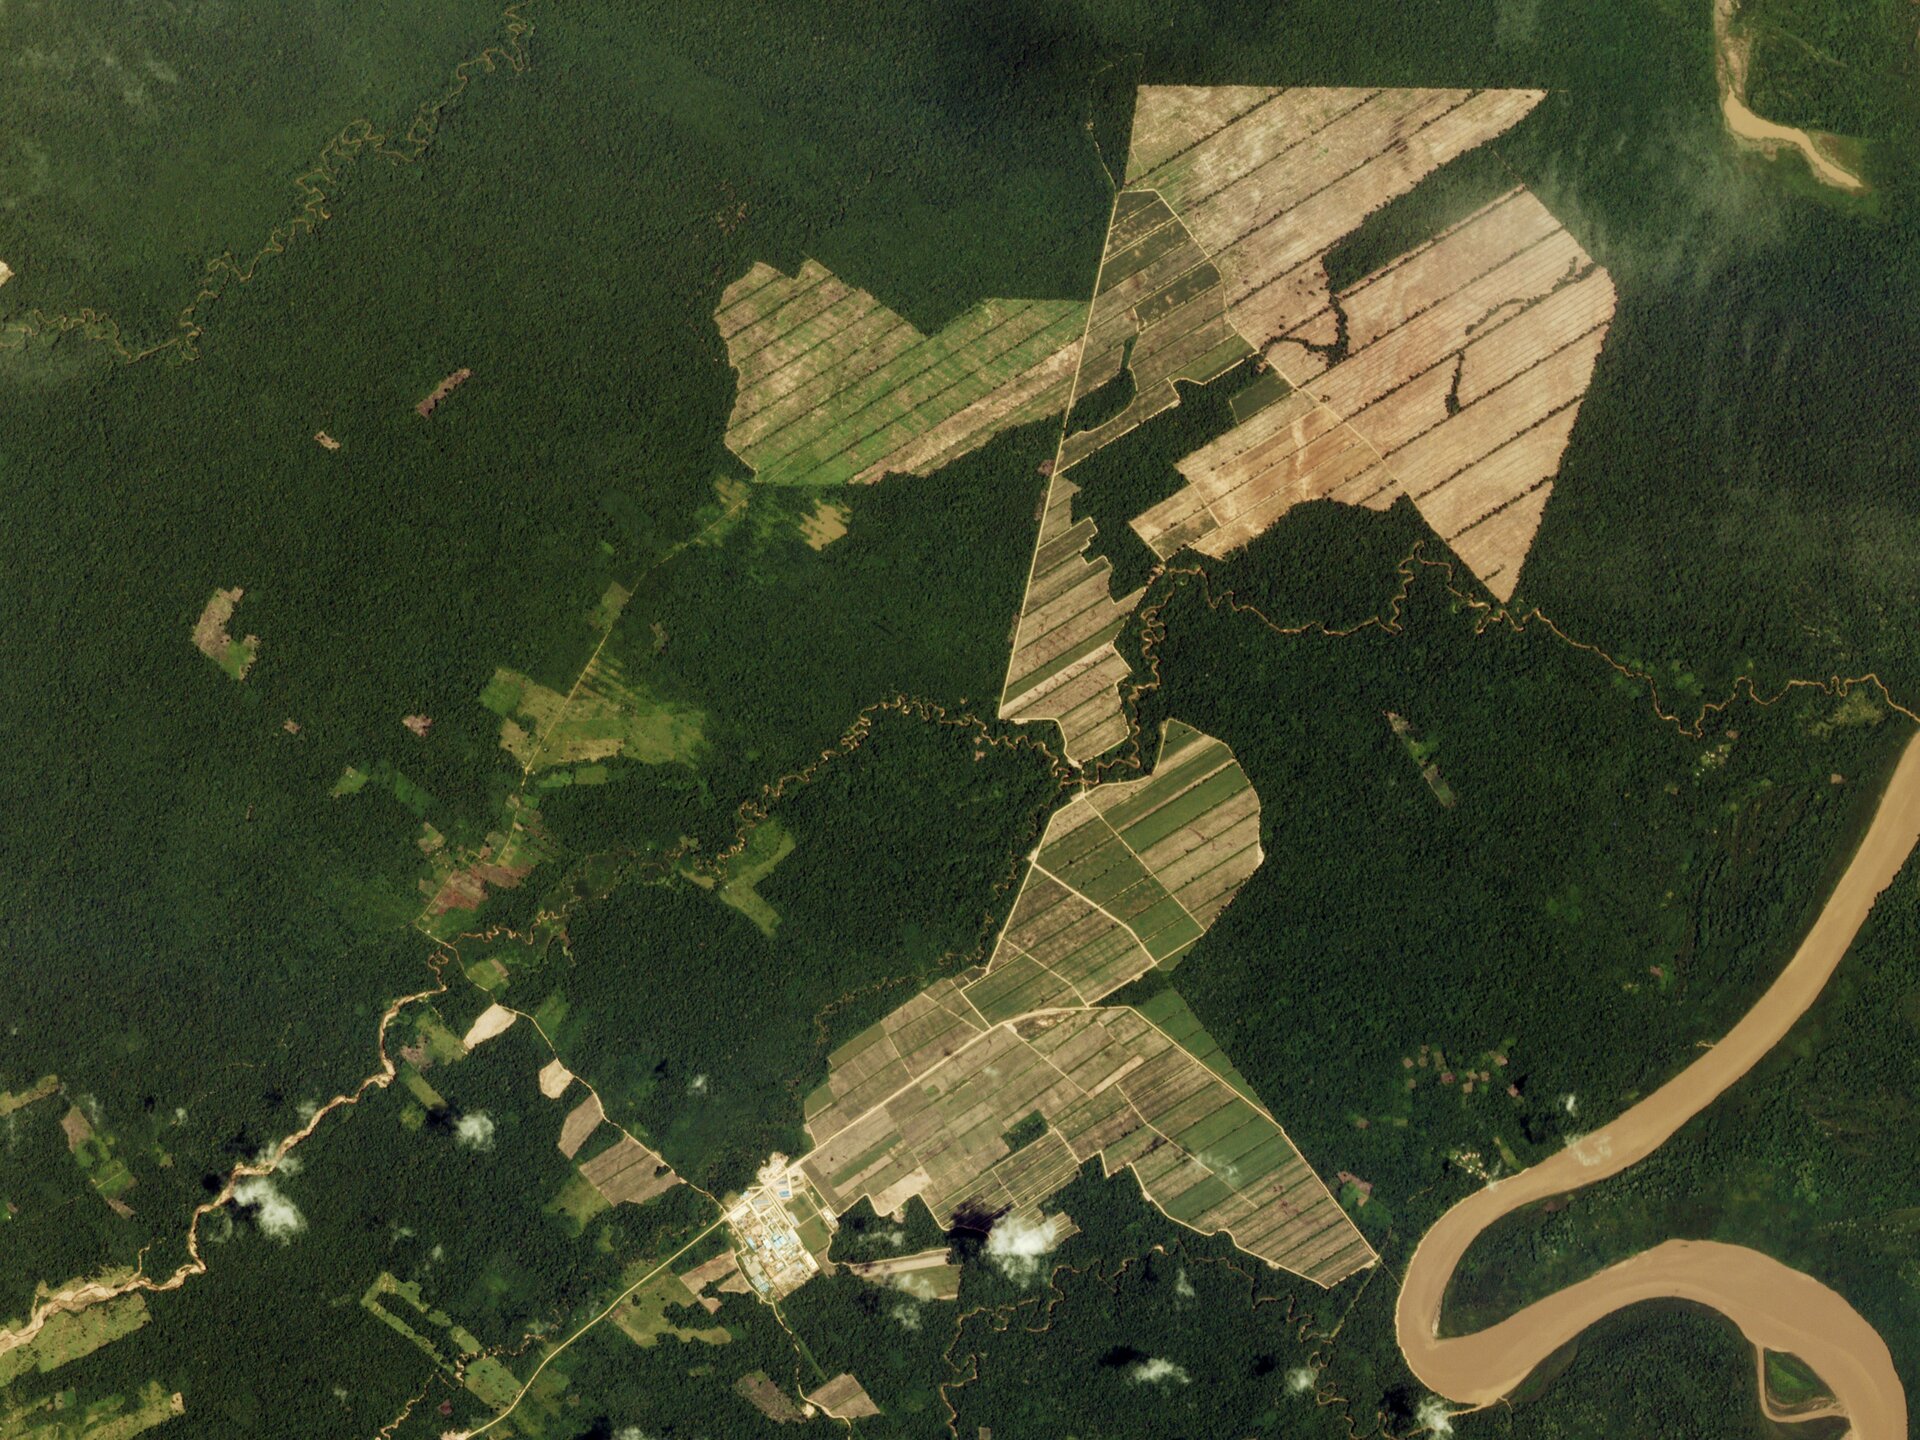 Zdjęcie przedstawia widok z lotu ptaka na tereny uprawy trzciny. Pod uprawę wykarczowane zostały ogromne obszary lasu. Widoczne są podłużne pola trzciny.